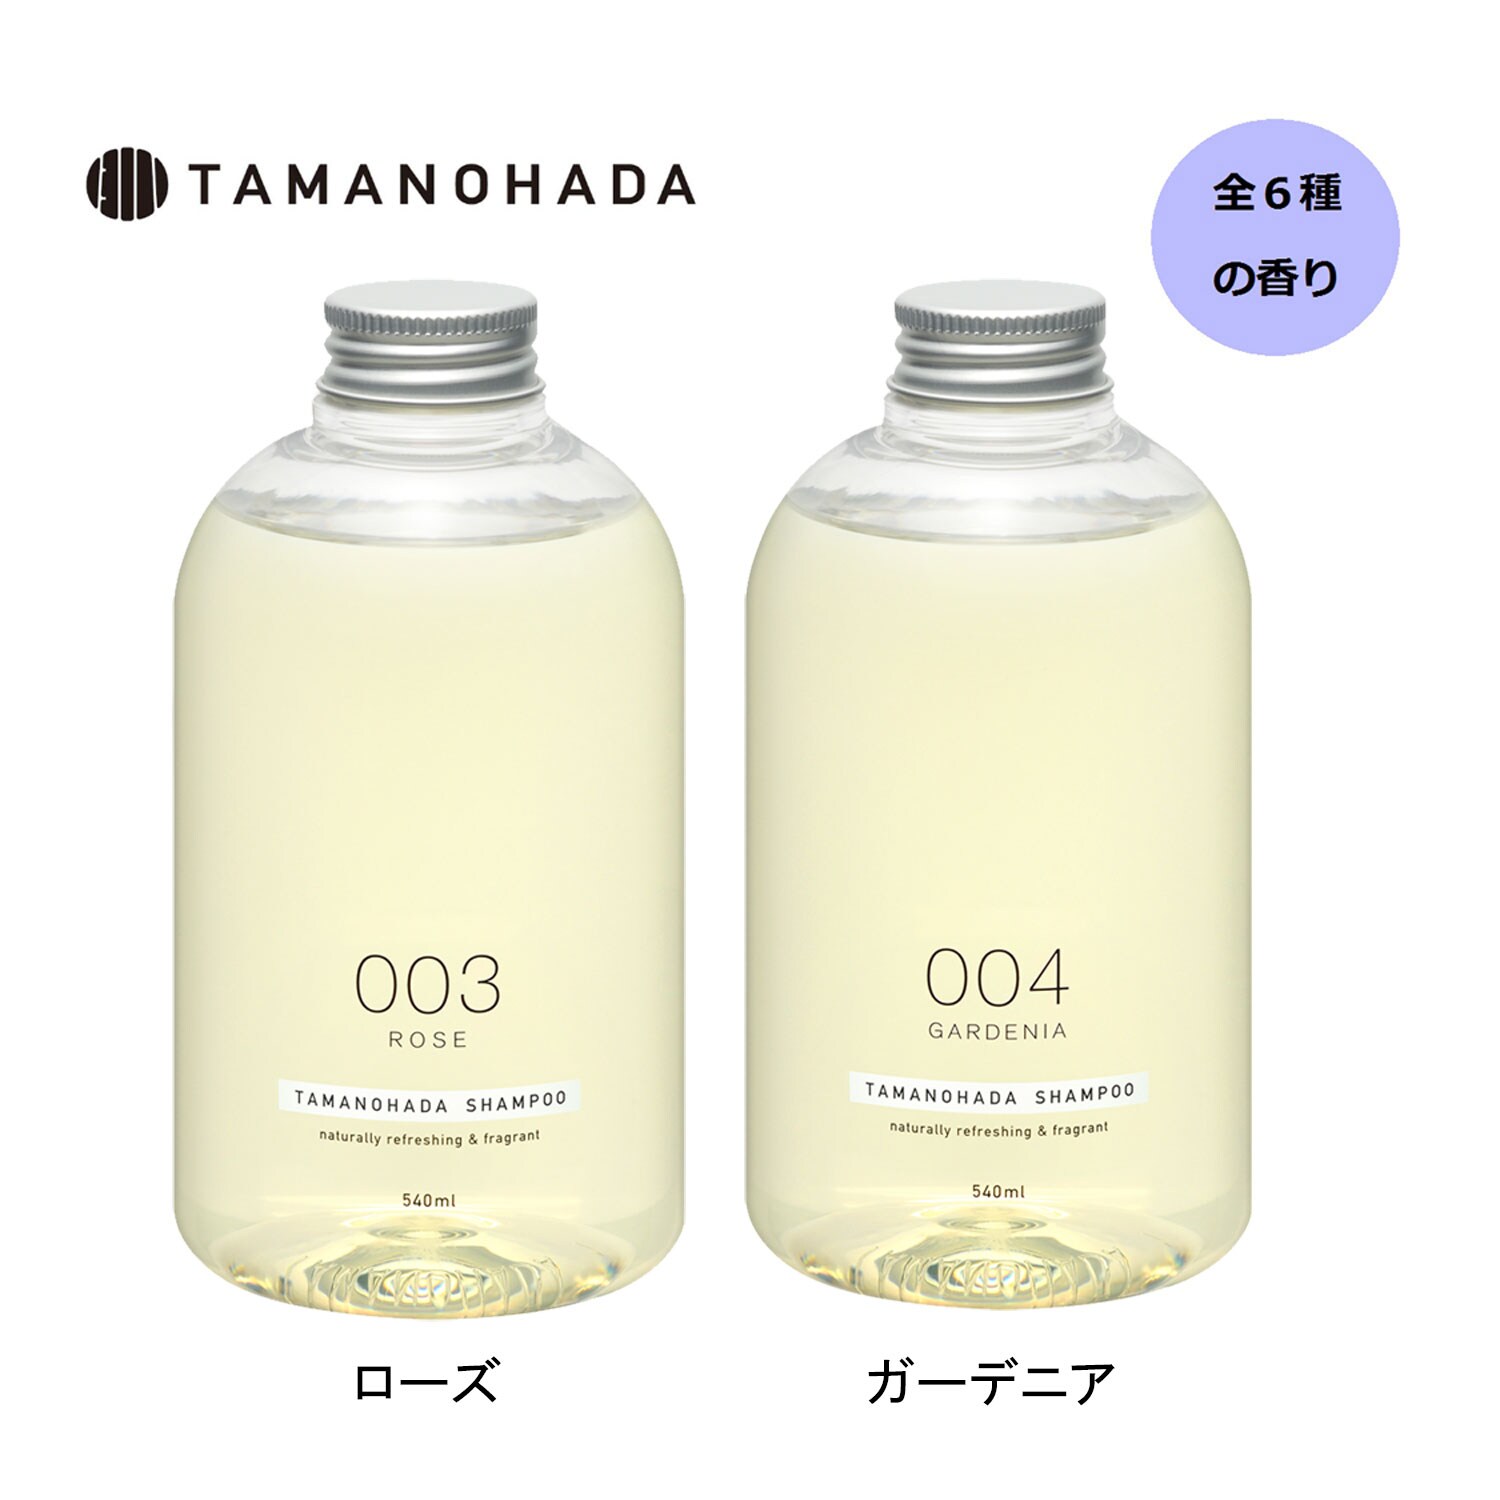 【タマノハダ/TAMANOHADA】TAMANOHADA SHAMPOO (シャンプー)